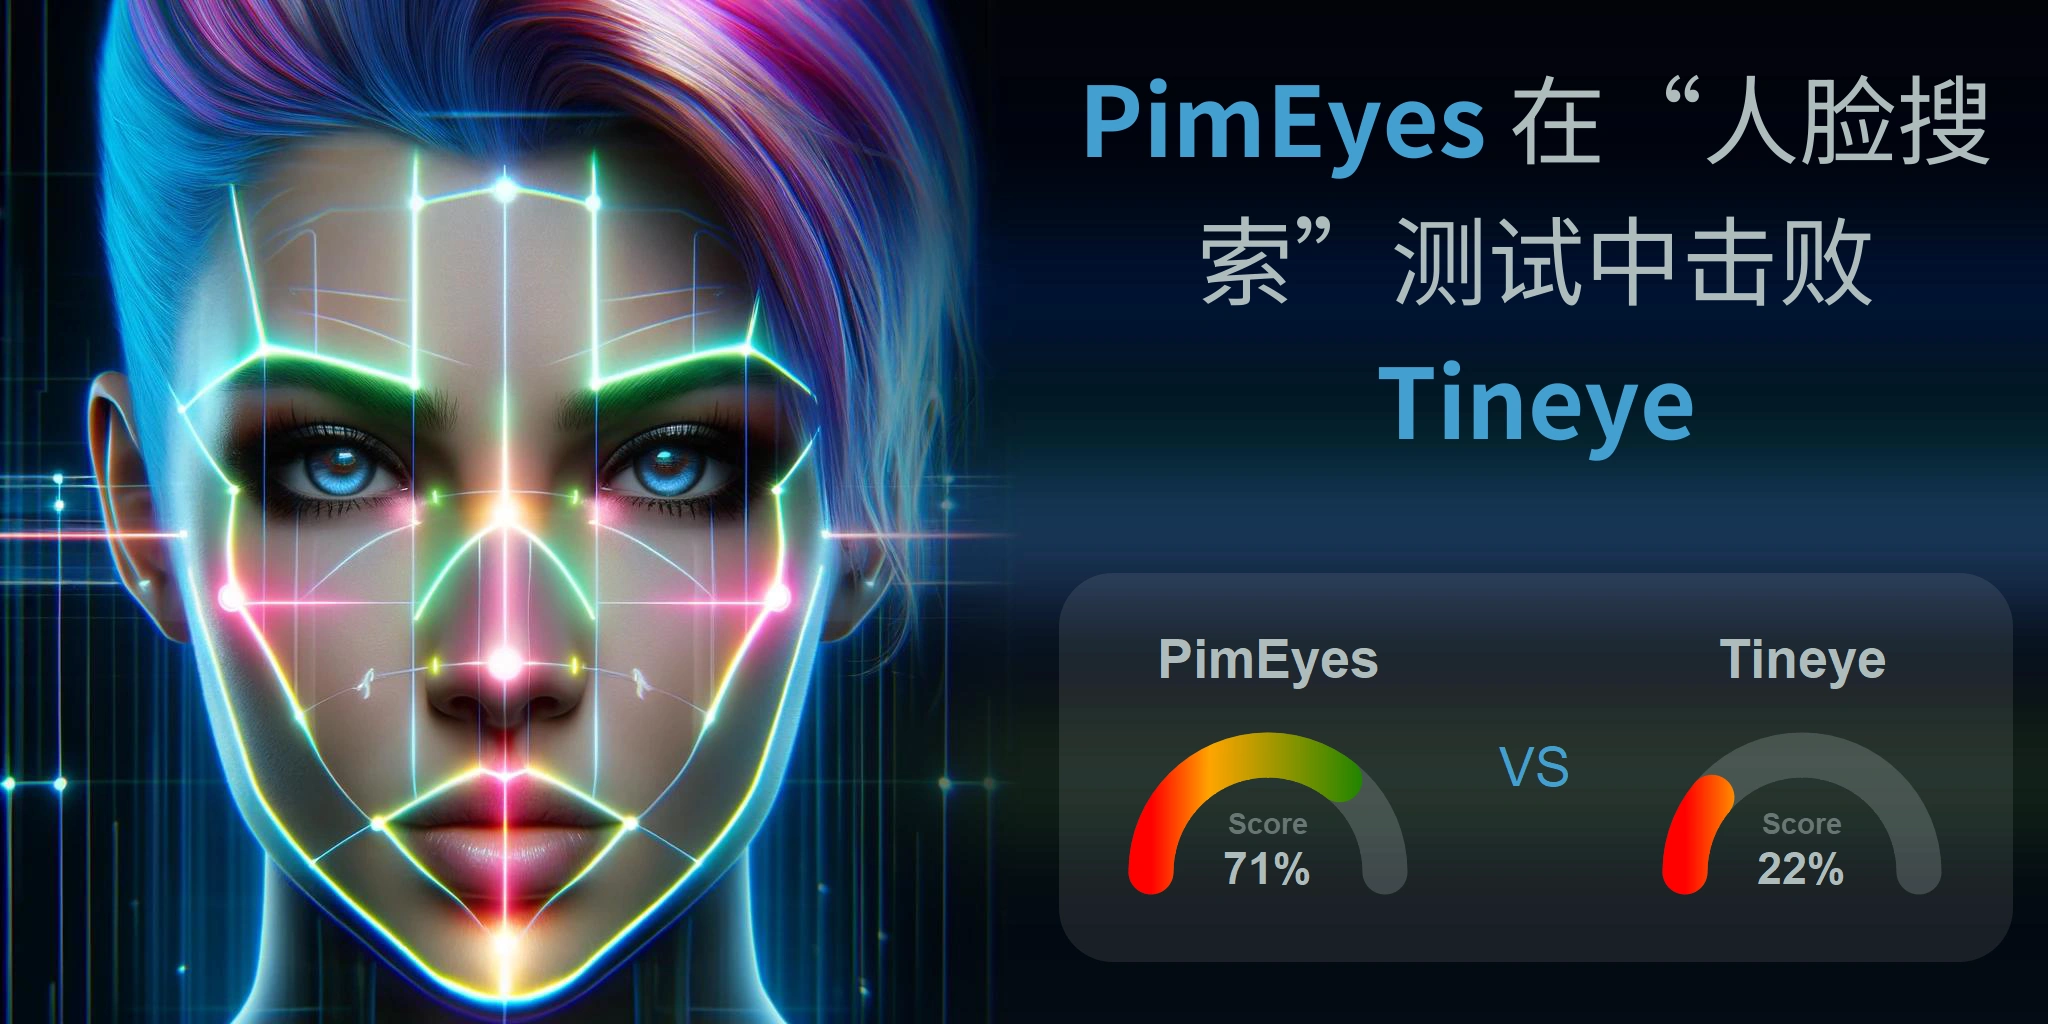 哪一个更适合人脸搜索：<br>PimEyes 还是 Tineye？